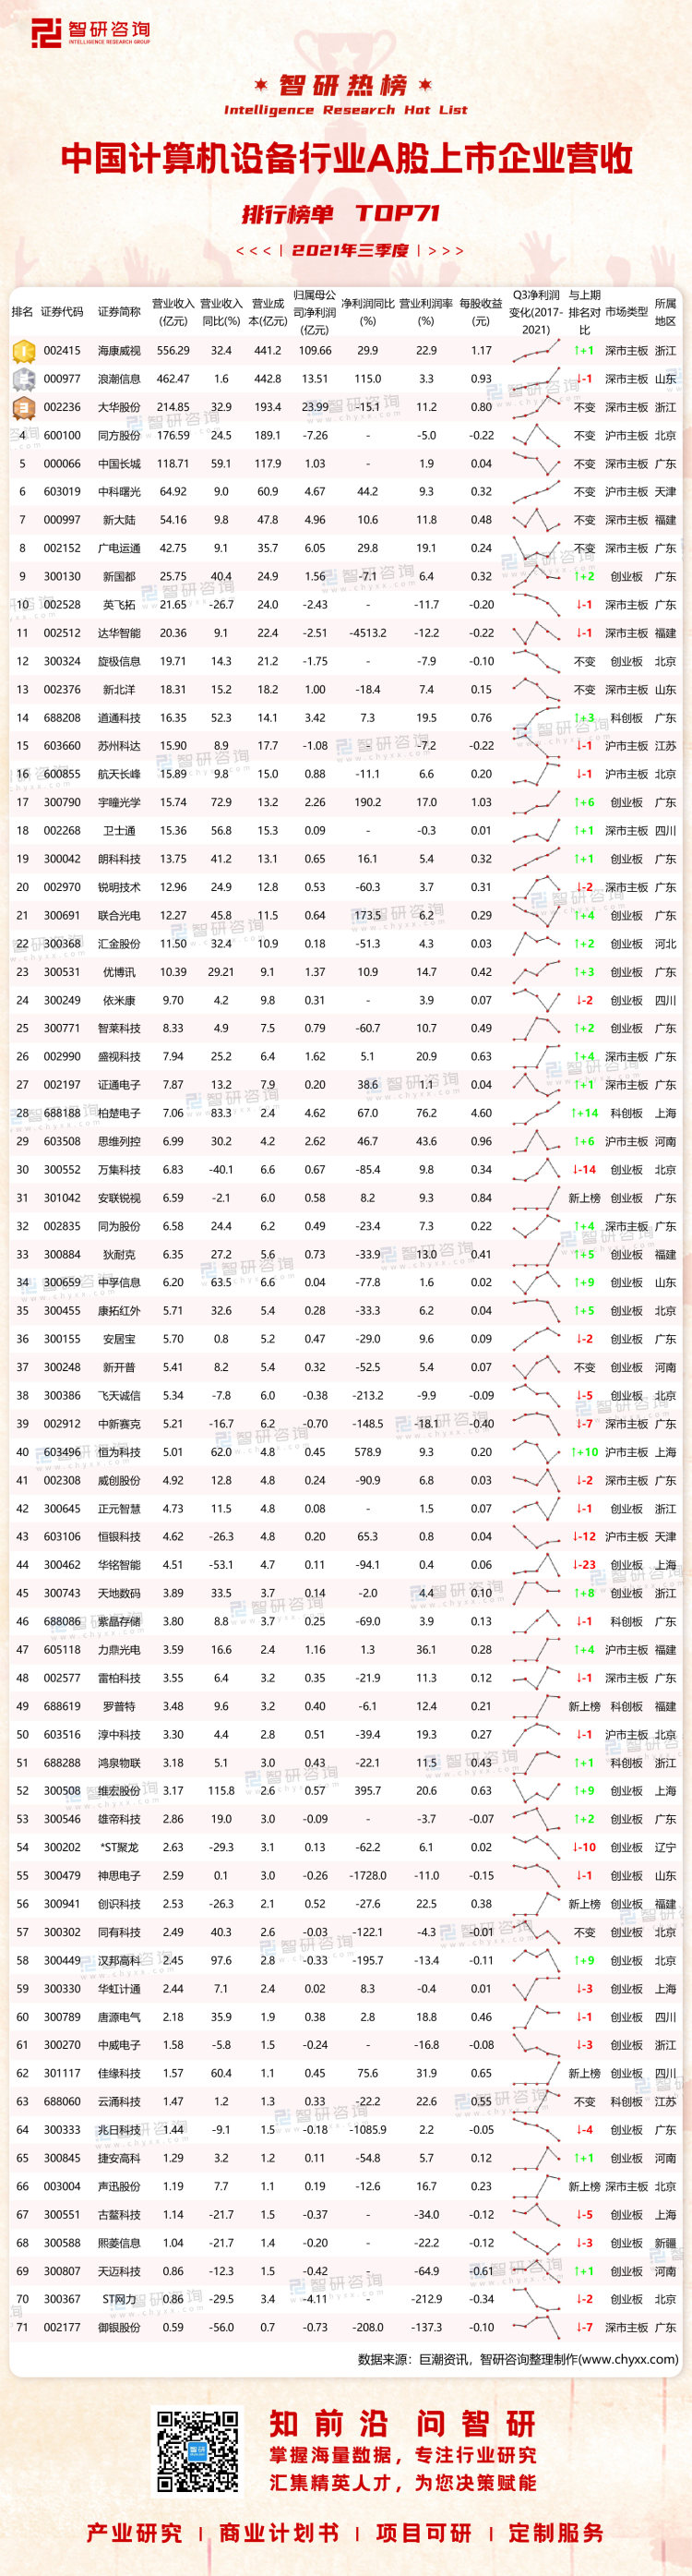 0321：2021年三季度中国计算机设备行业A股上市企业营收排行榜-水印带二维码-有网址（程燕萍）